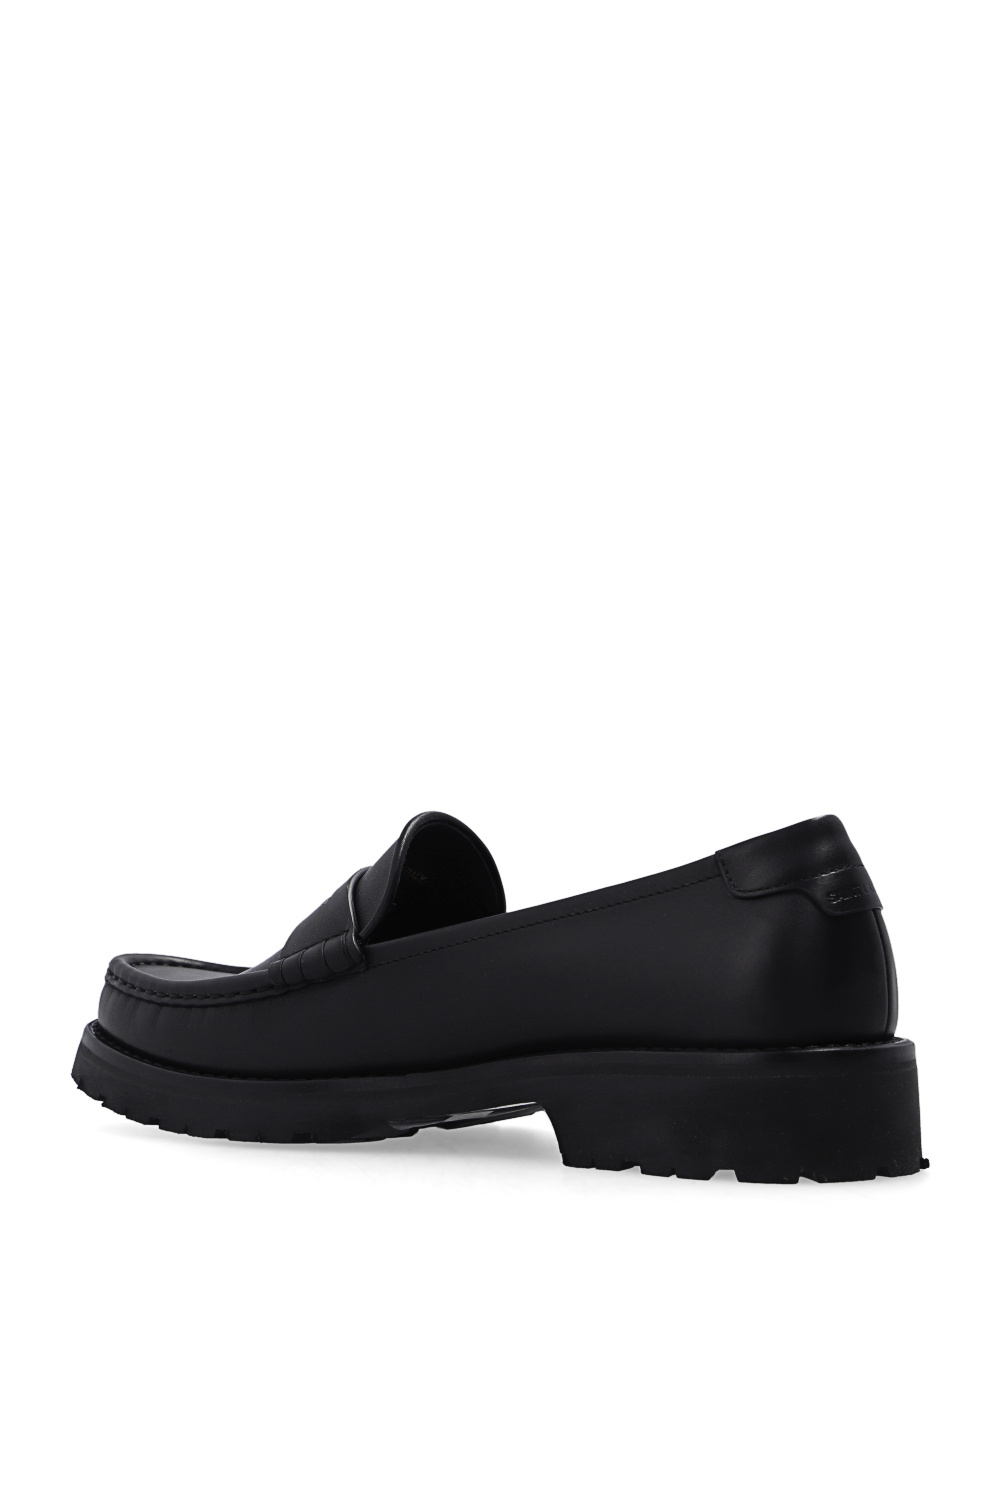 Saint Laurent ‘Penny’ loafers